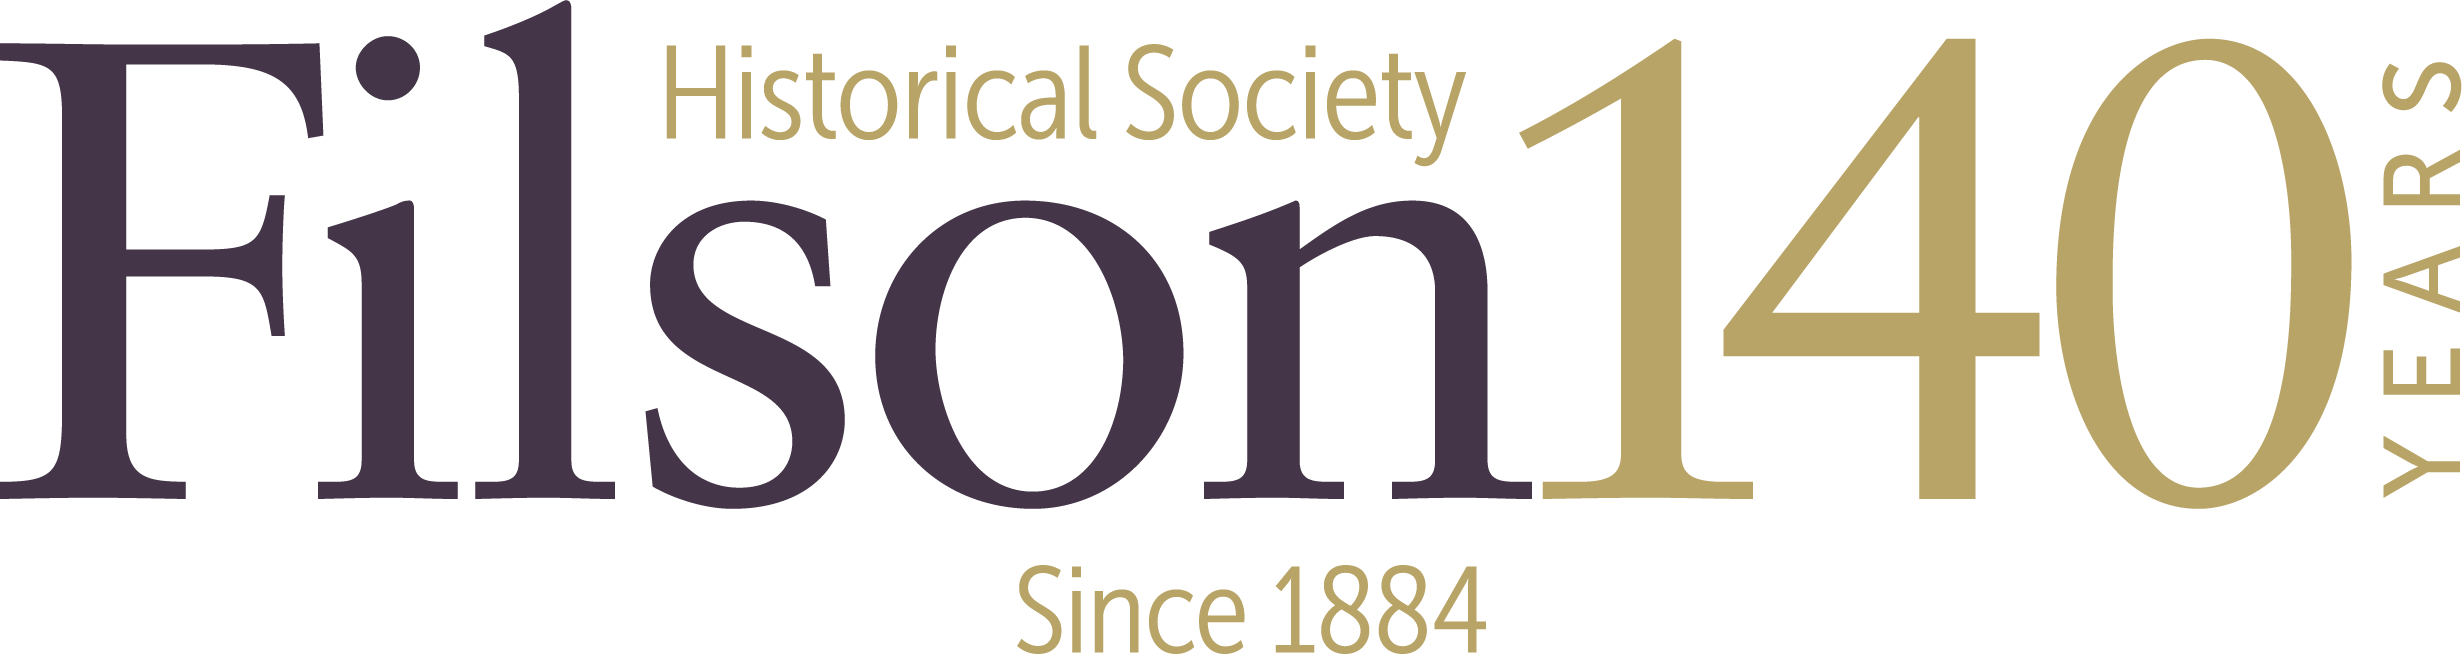 Filson_140 Logo Final.png